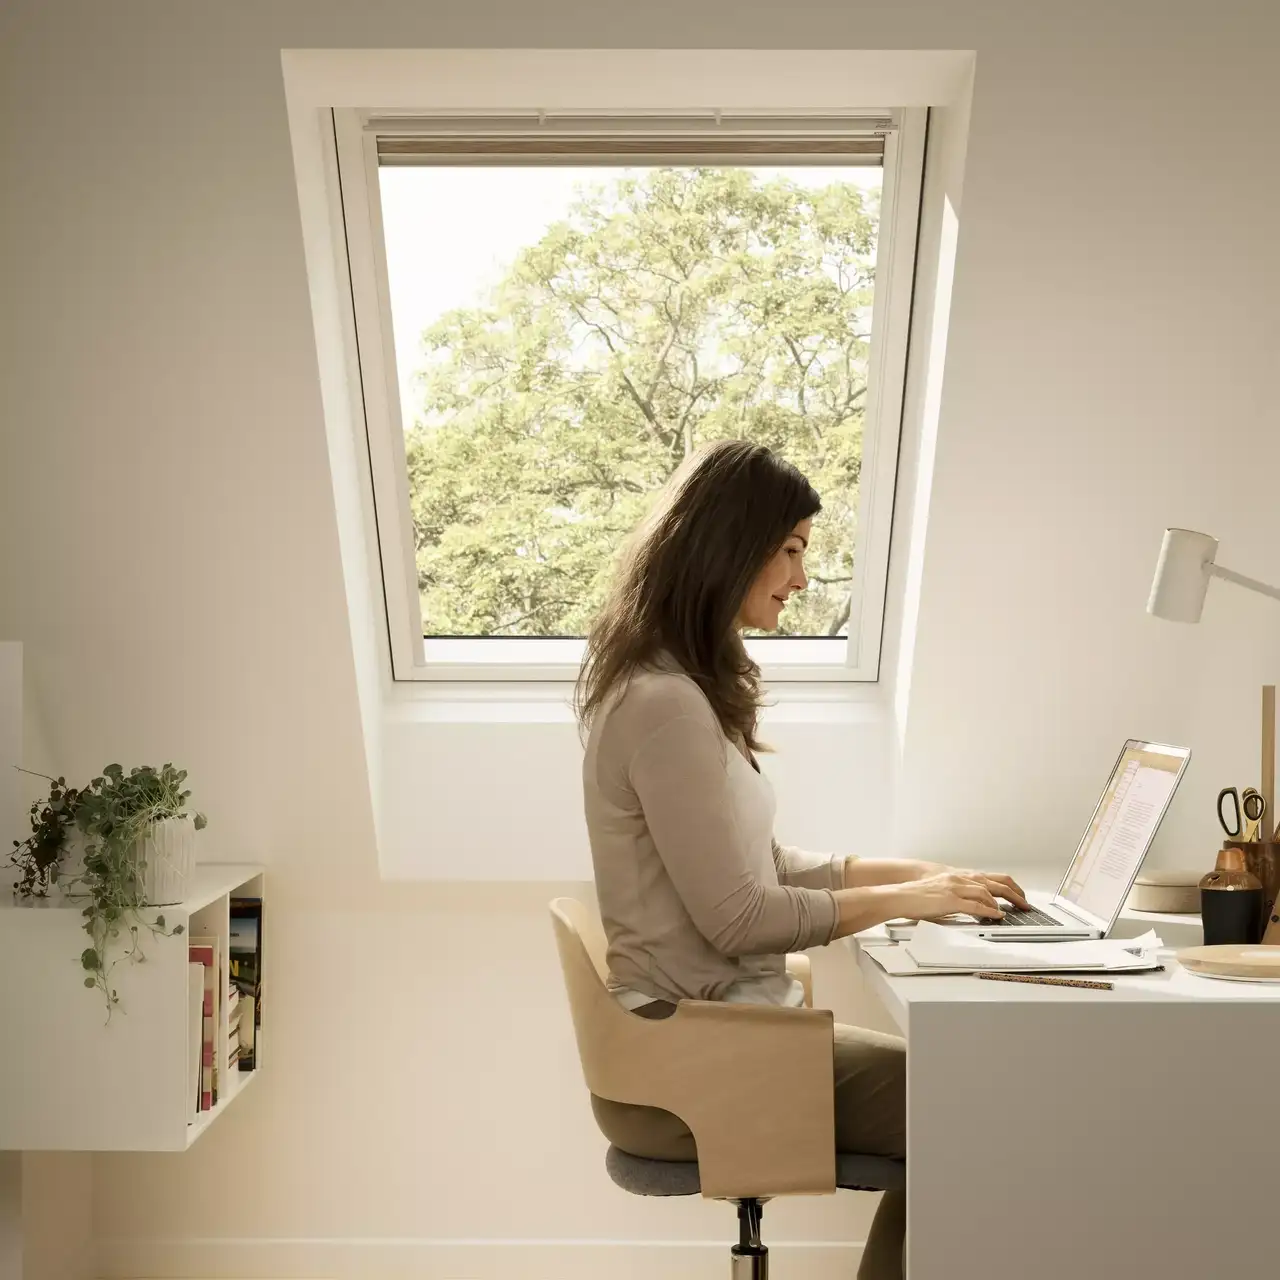 Homeoffice mit VELUX-Fenster, Schreibtisch, Laptop und Pflanzen, die einen ruhigen Arbeitsplatz bieten.